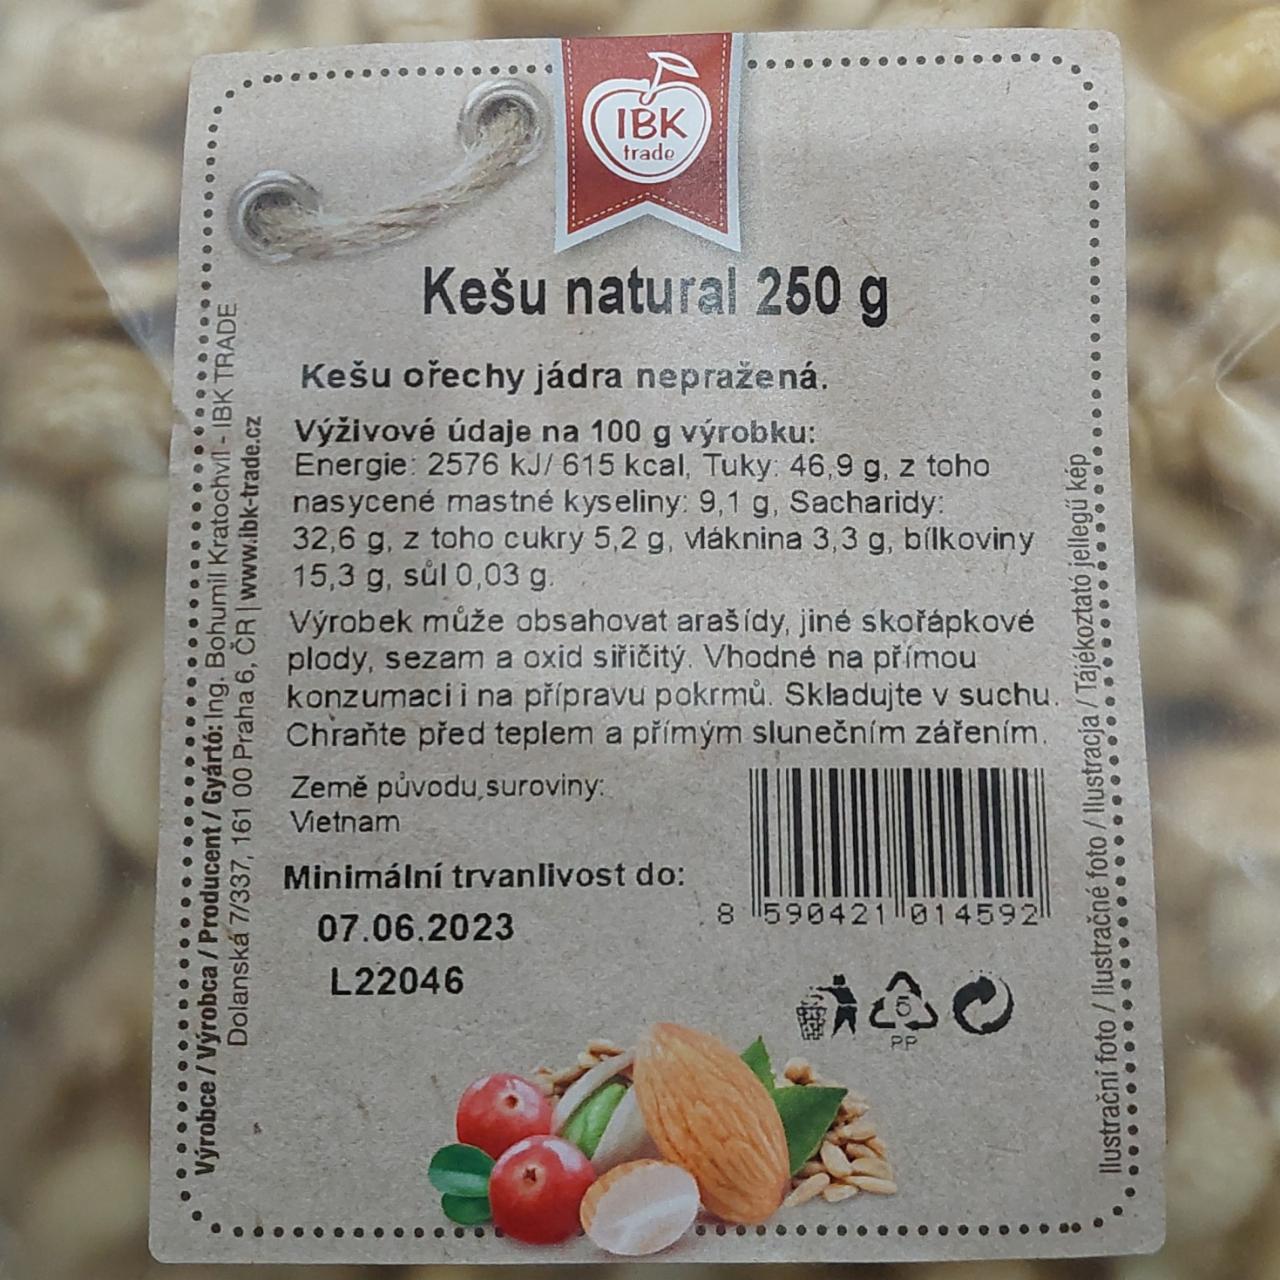 Fotografie - Kešu natural IBK trade